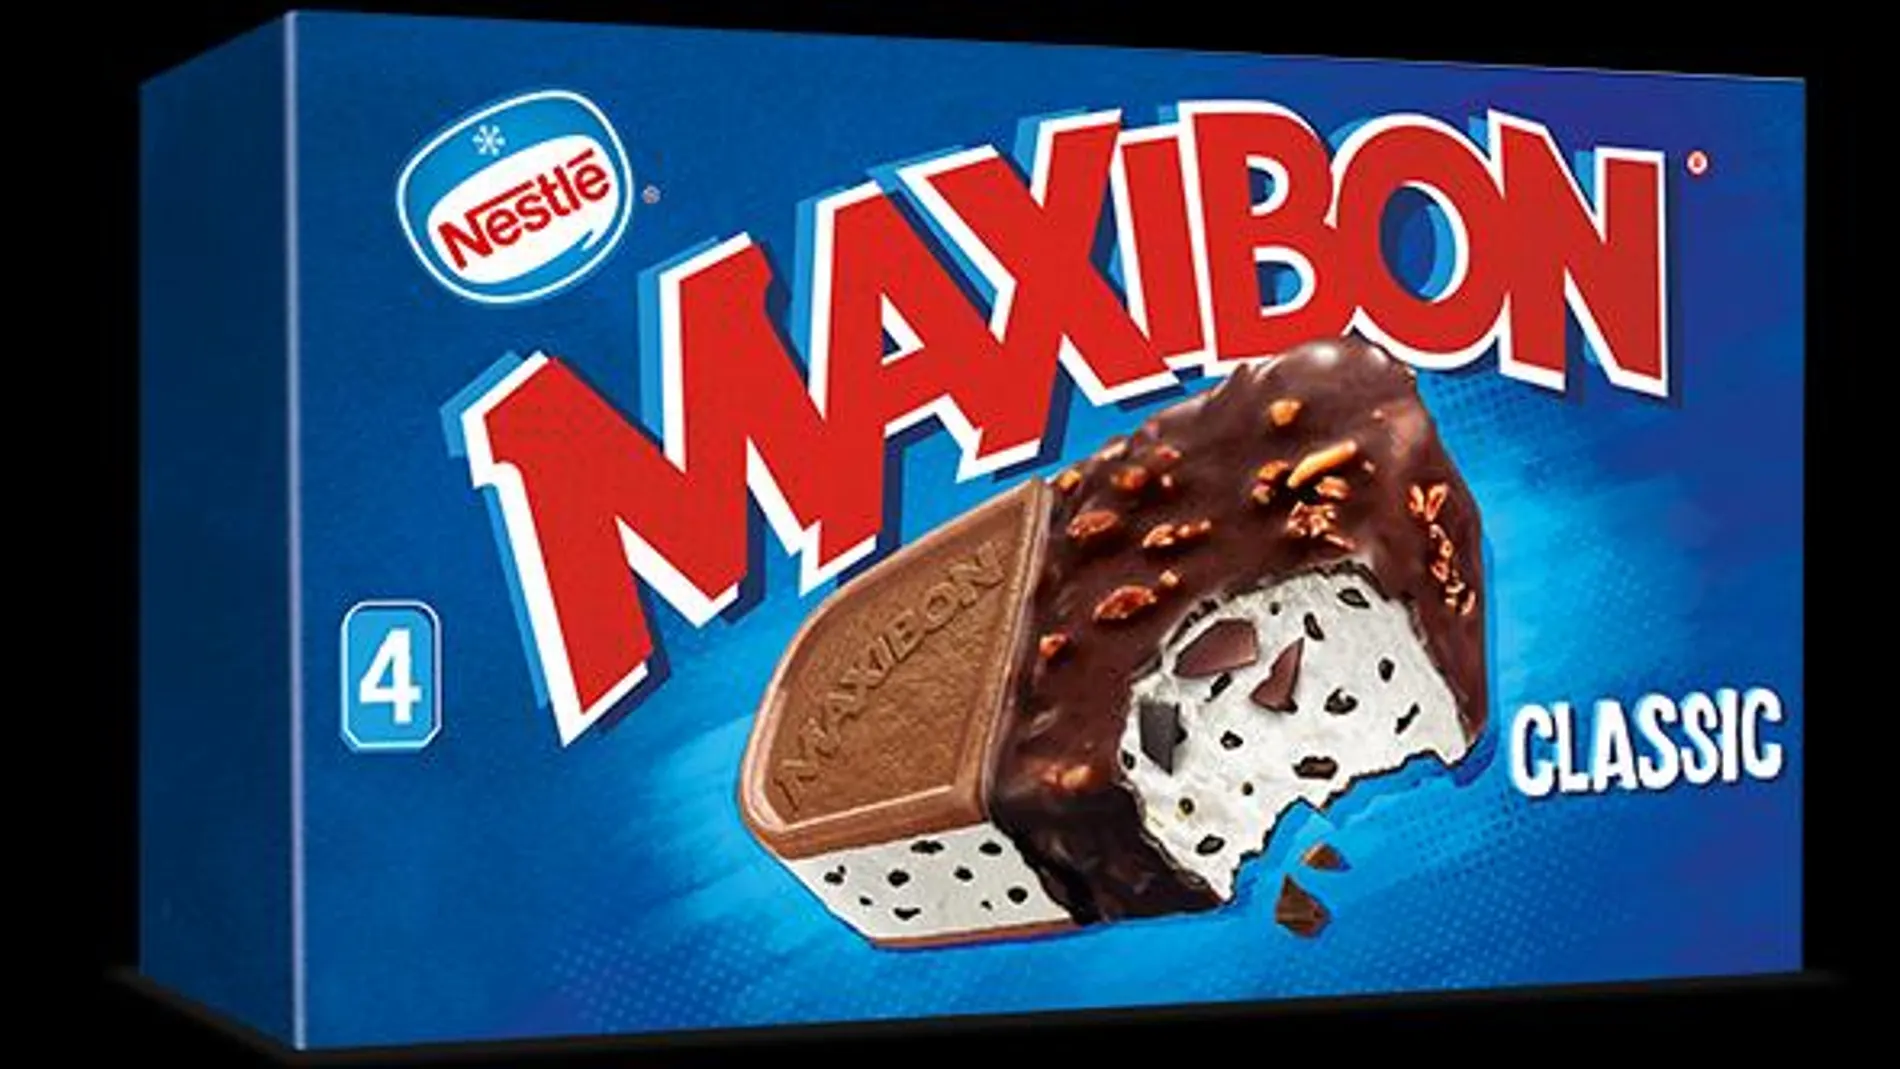 El popular helado Maxibón, es uno de los productos retirados por contener sustancias cancerígenas